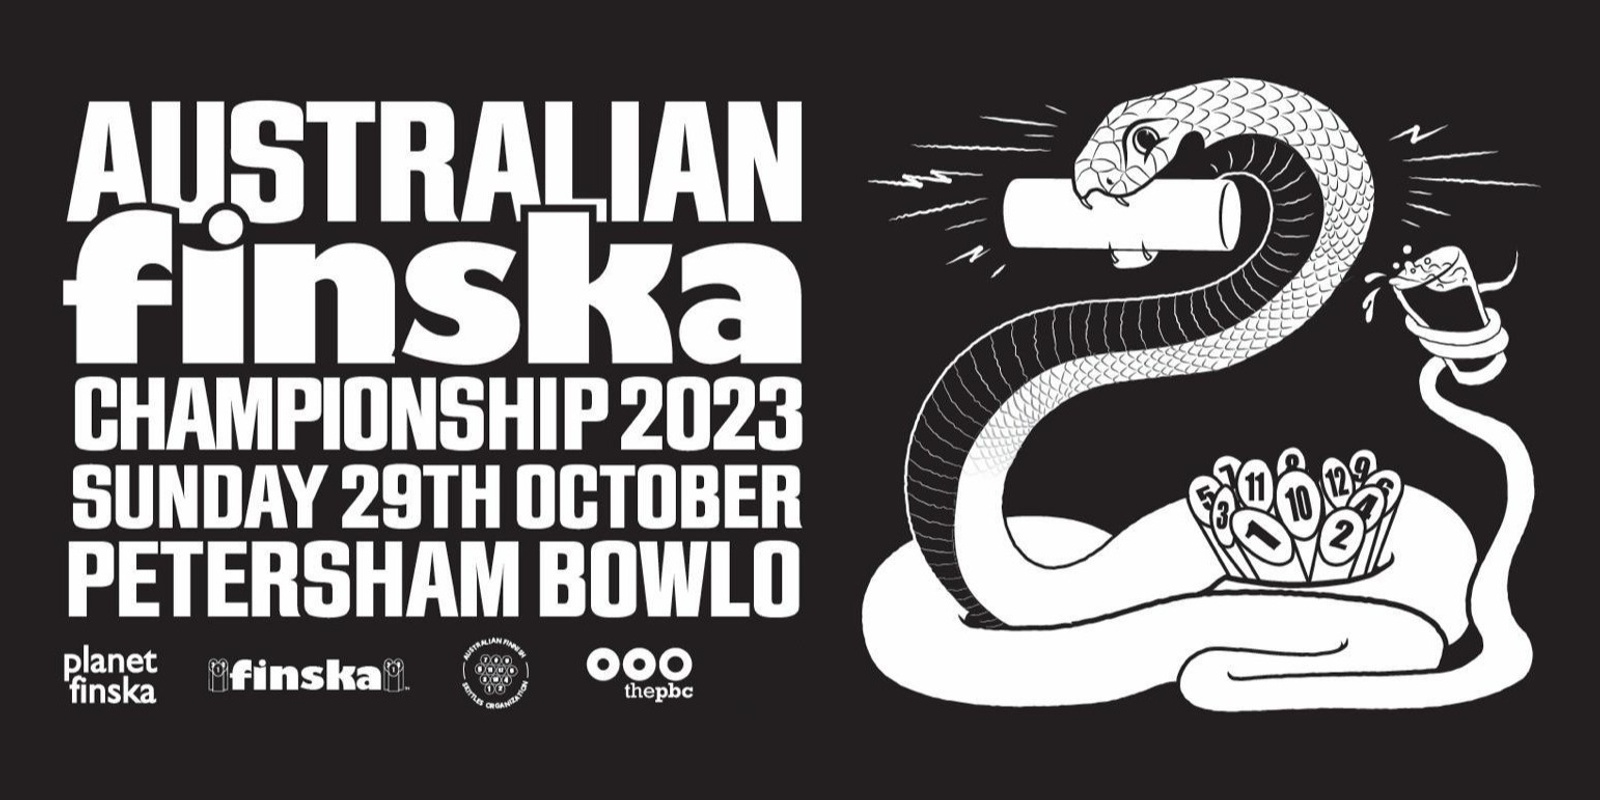 Banner image for Australian Finska Championship 2023